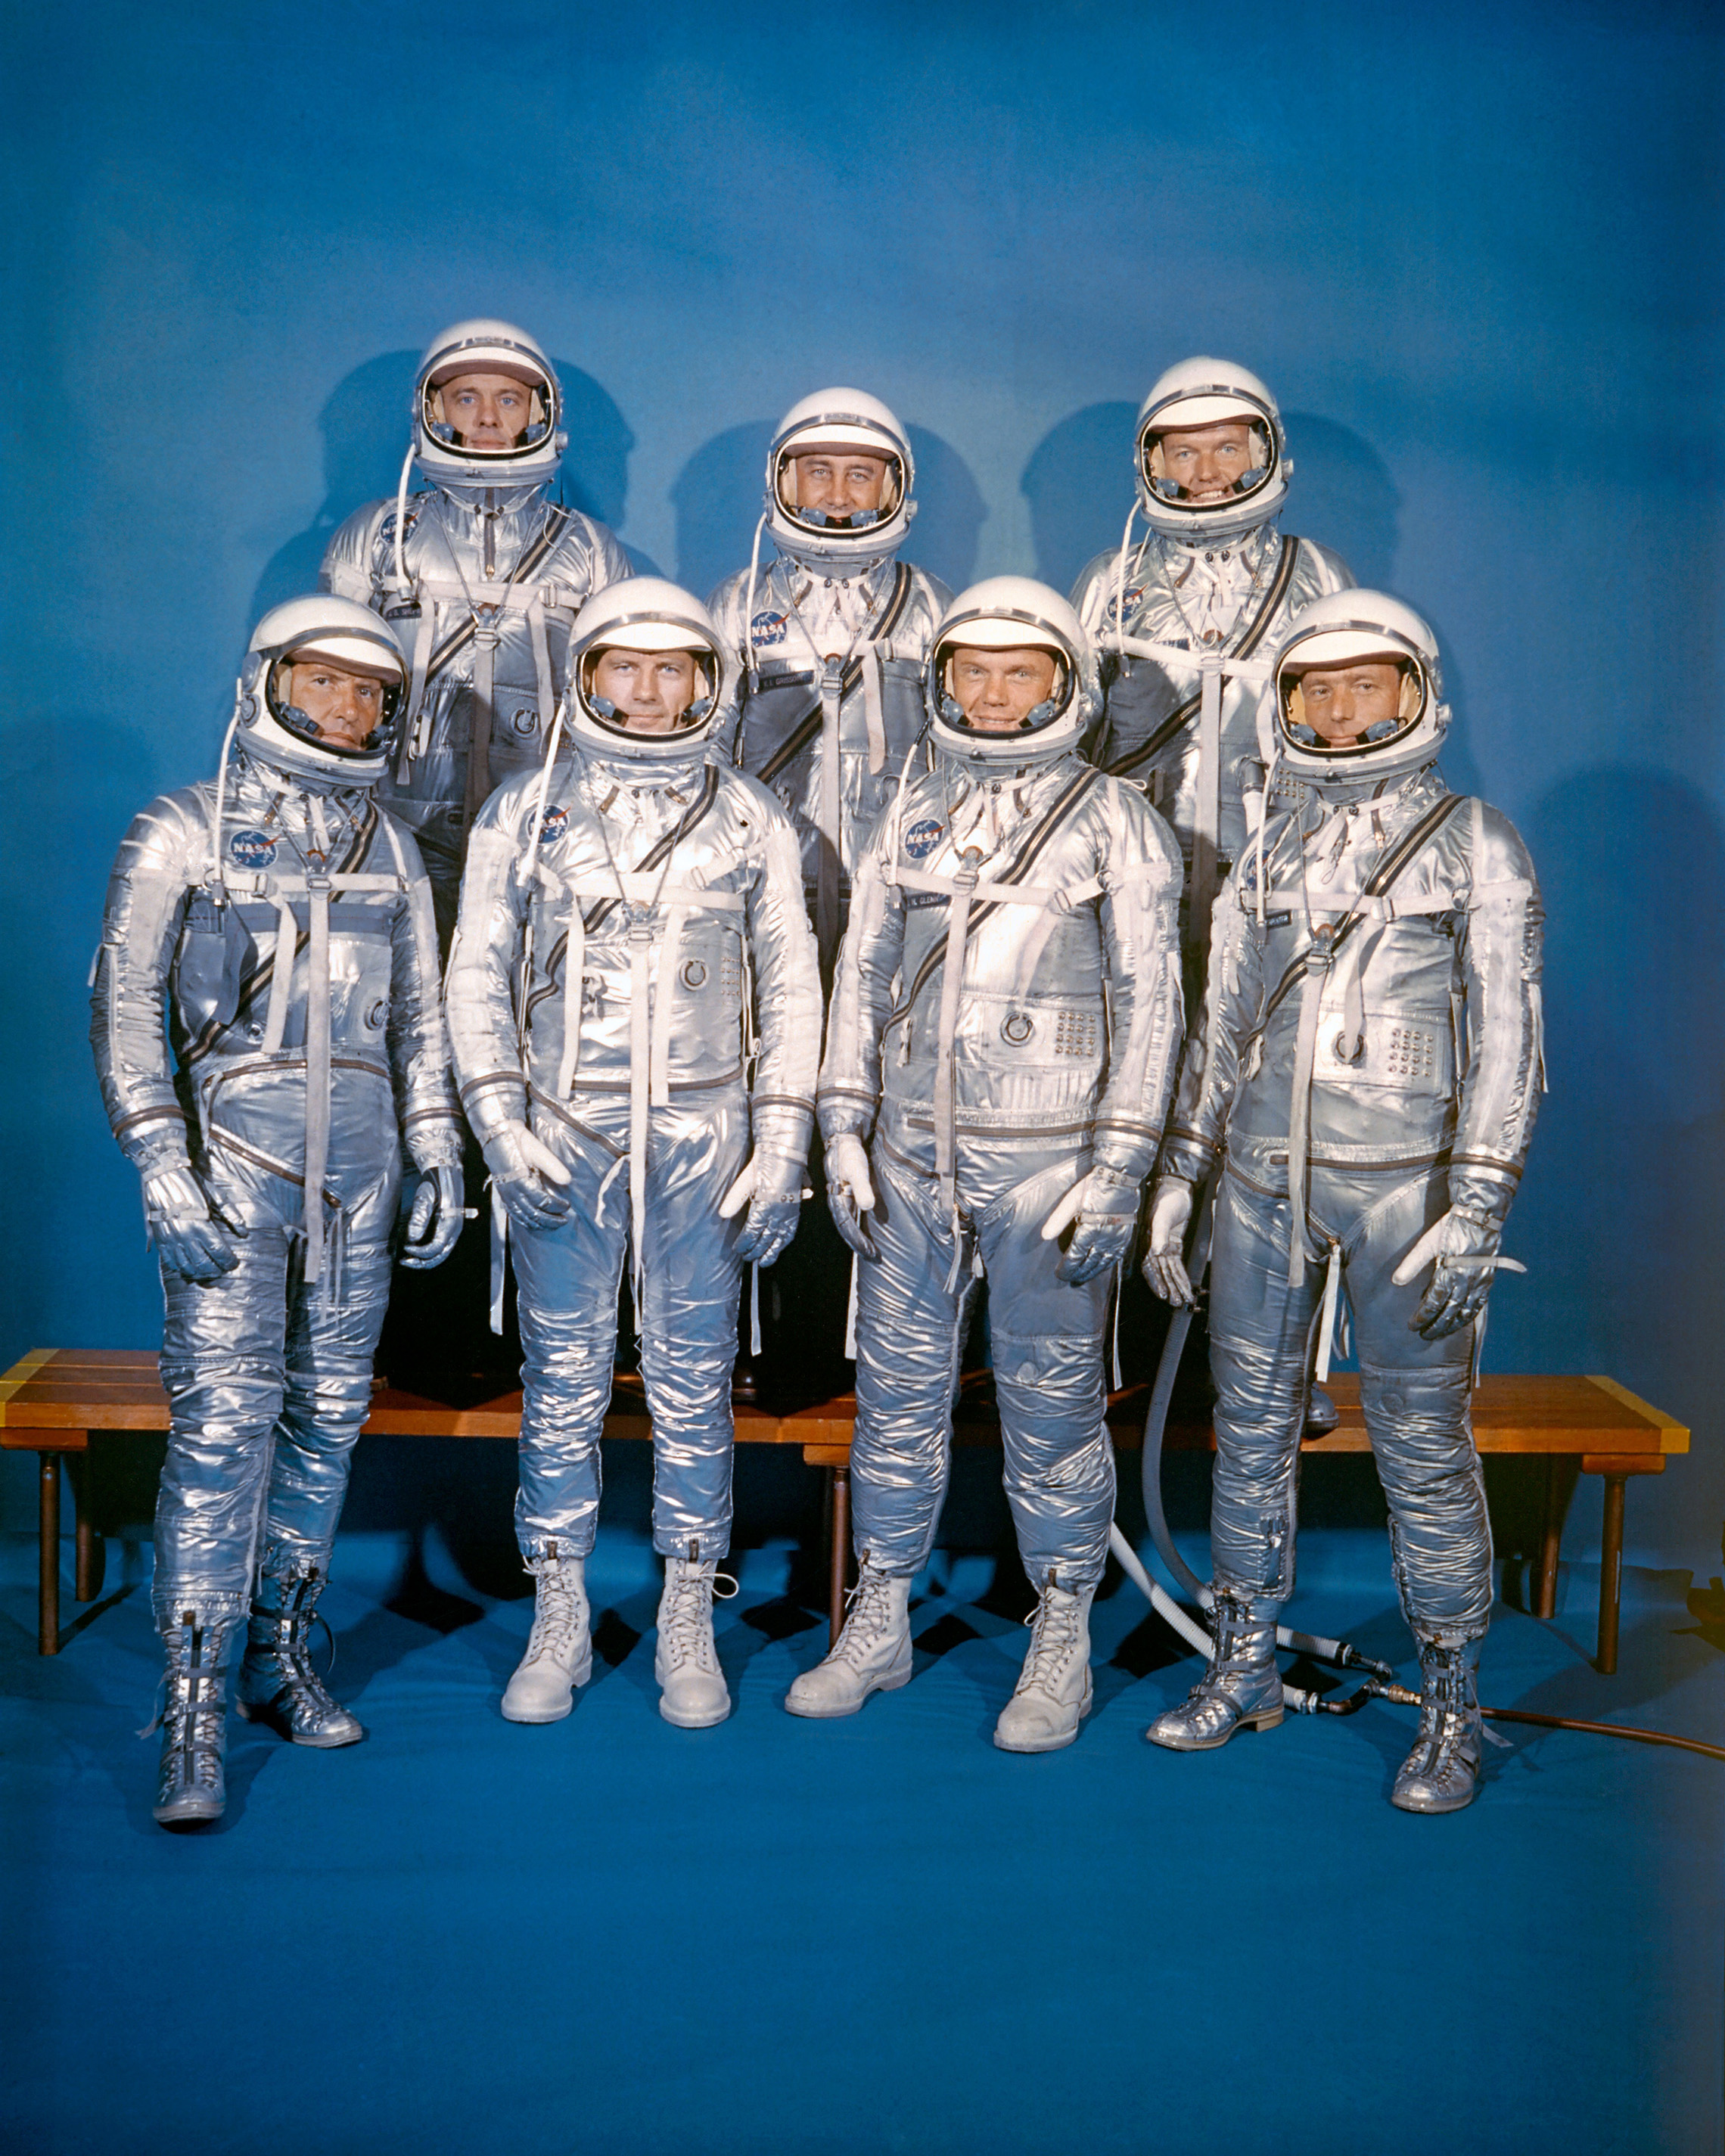 den 9 April 1959 introducerade NASA sin första astronautklass, Mercury 7. Främre raden, vänster till höger: Walter M. Schirra, Jr., Donald K. "Deke" Slayton, John H. Glenn, Jr. och M. Scott Carpenter; bakre raden, Alan B. Shepard, Jr., Virgil I. " Gus " Grissom och L. Gordon Cooper, Jr. (NASA)"Deke" Slayton, John H. Glenn, Jr., and M. Scott Carpenter; back row, Alan B. Shepard, Jr., Virgil I. "Gus" Grissom, and L. Gordon Cooper, Jr. (NASA)